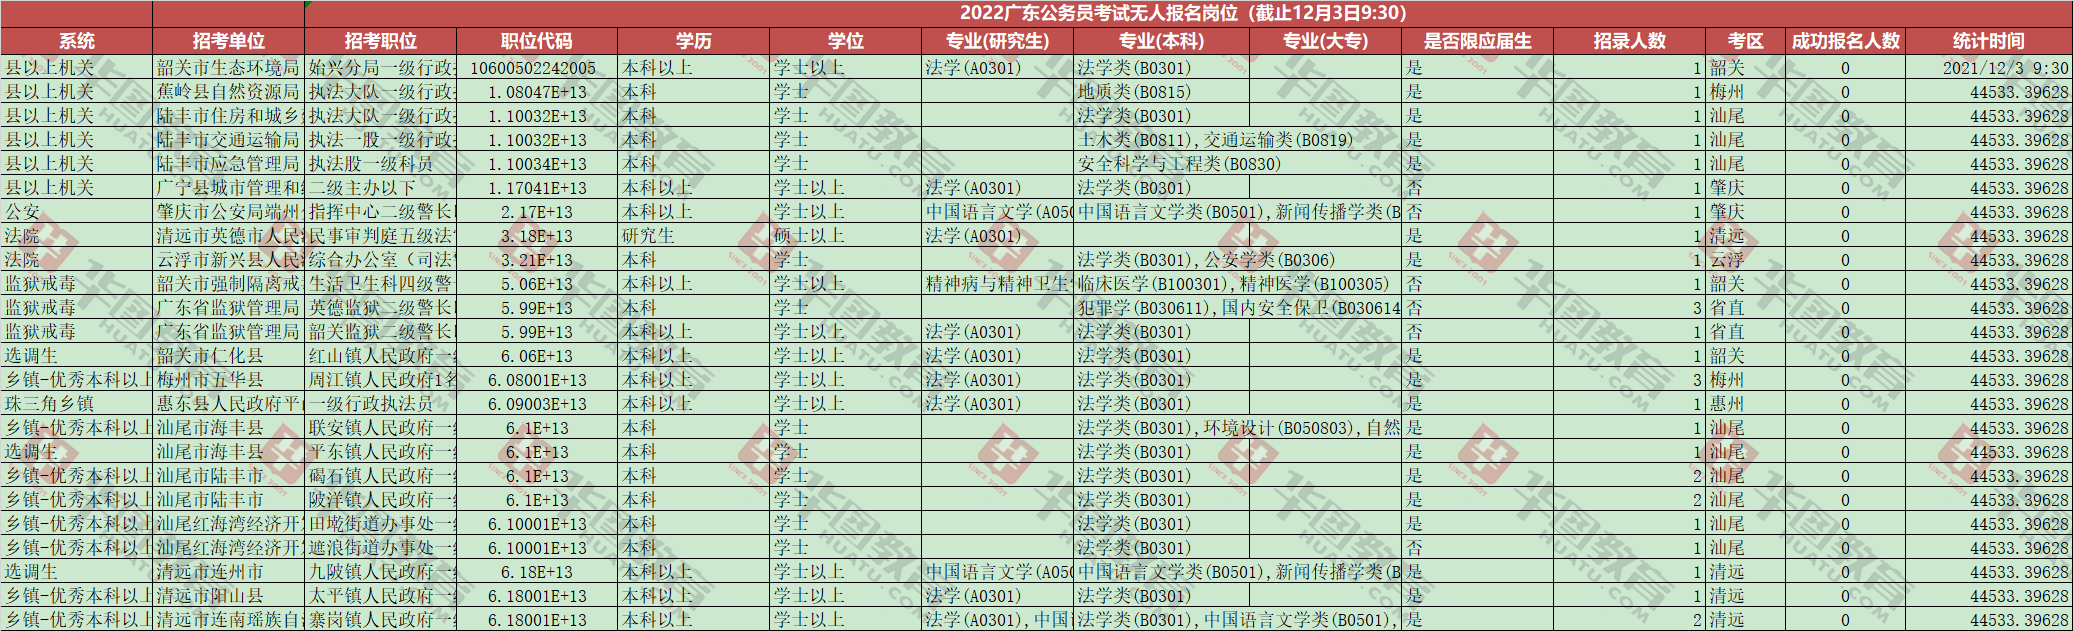 2022年广东省考无人报名职位剩余24个（截止12月3日09时30分）